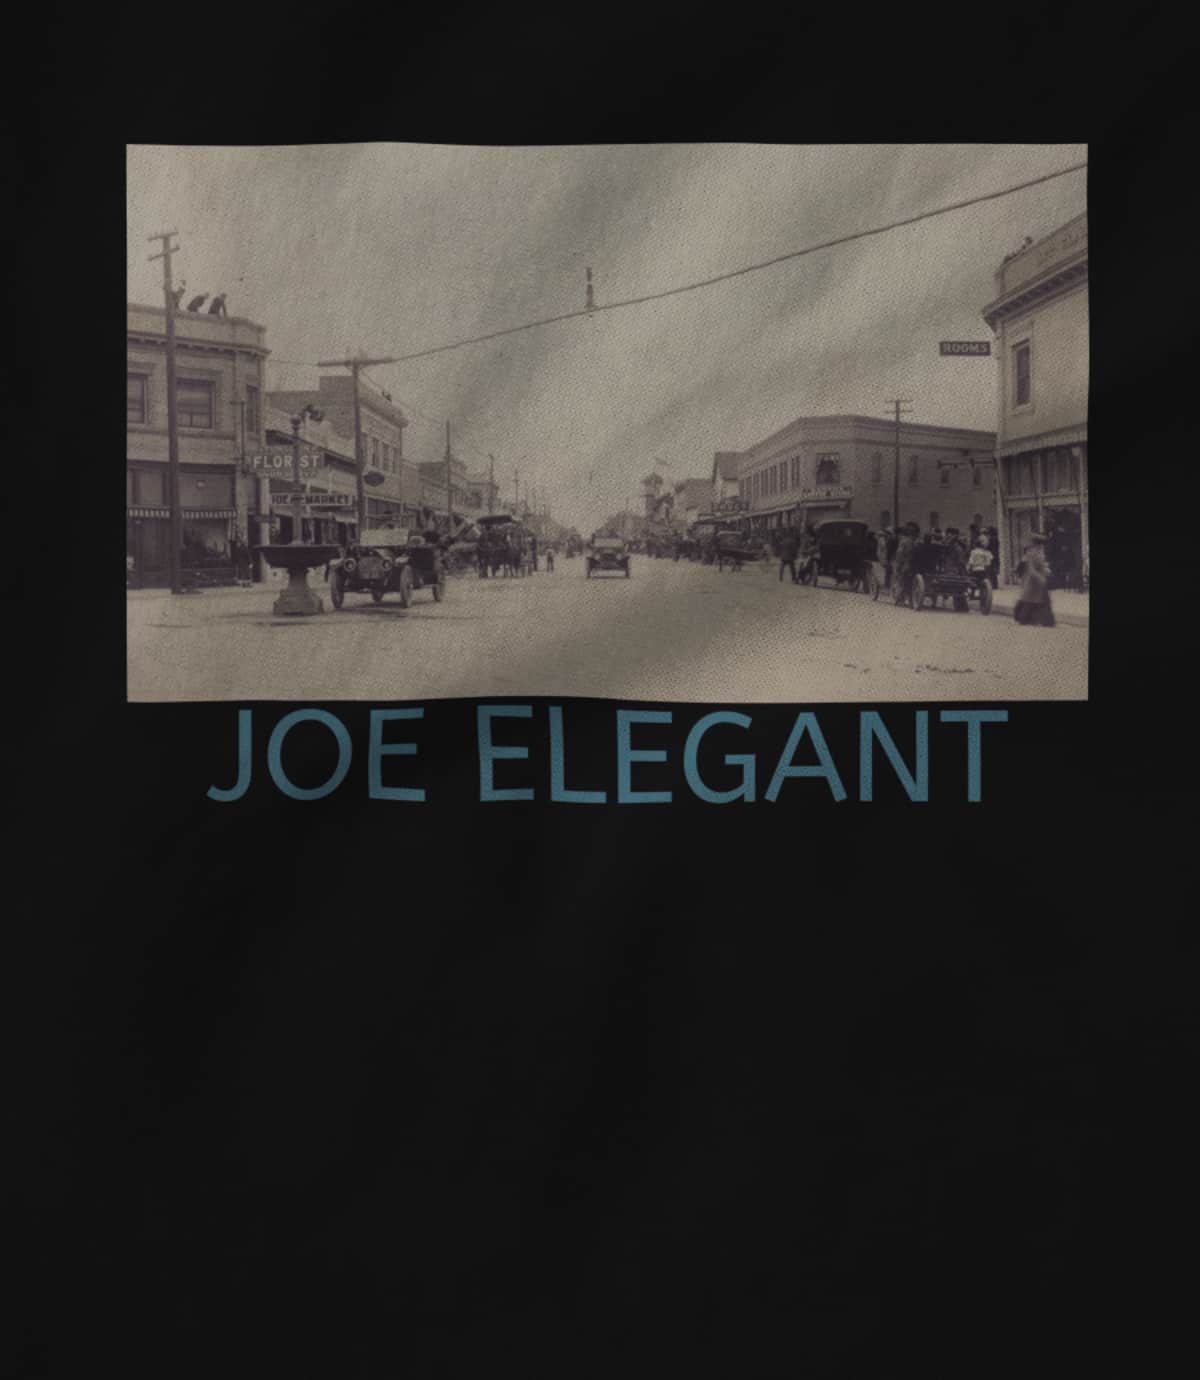 Joe Elegant